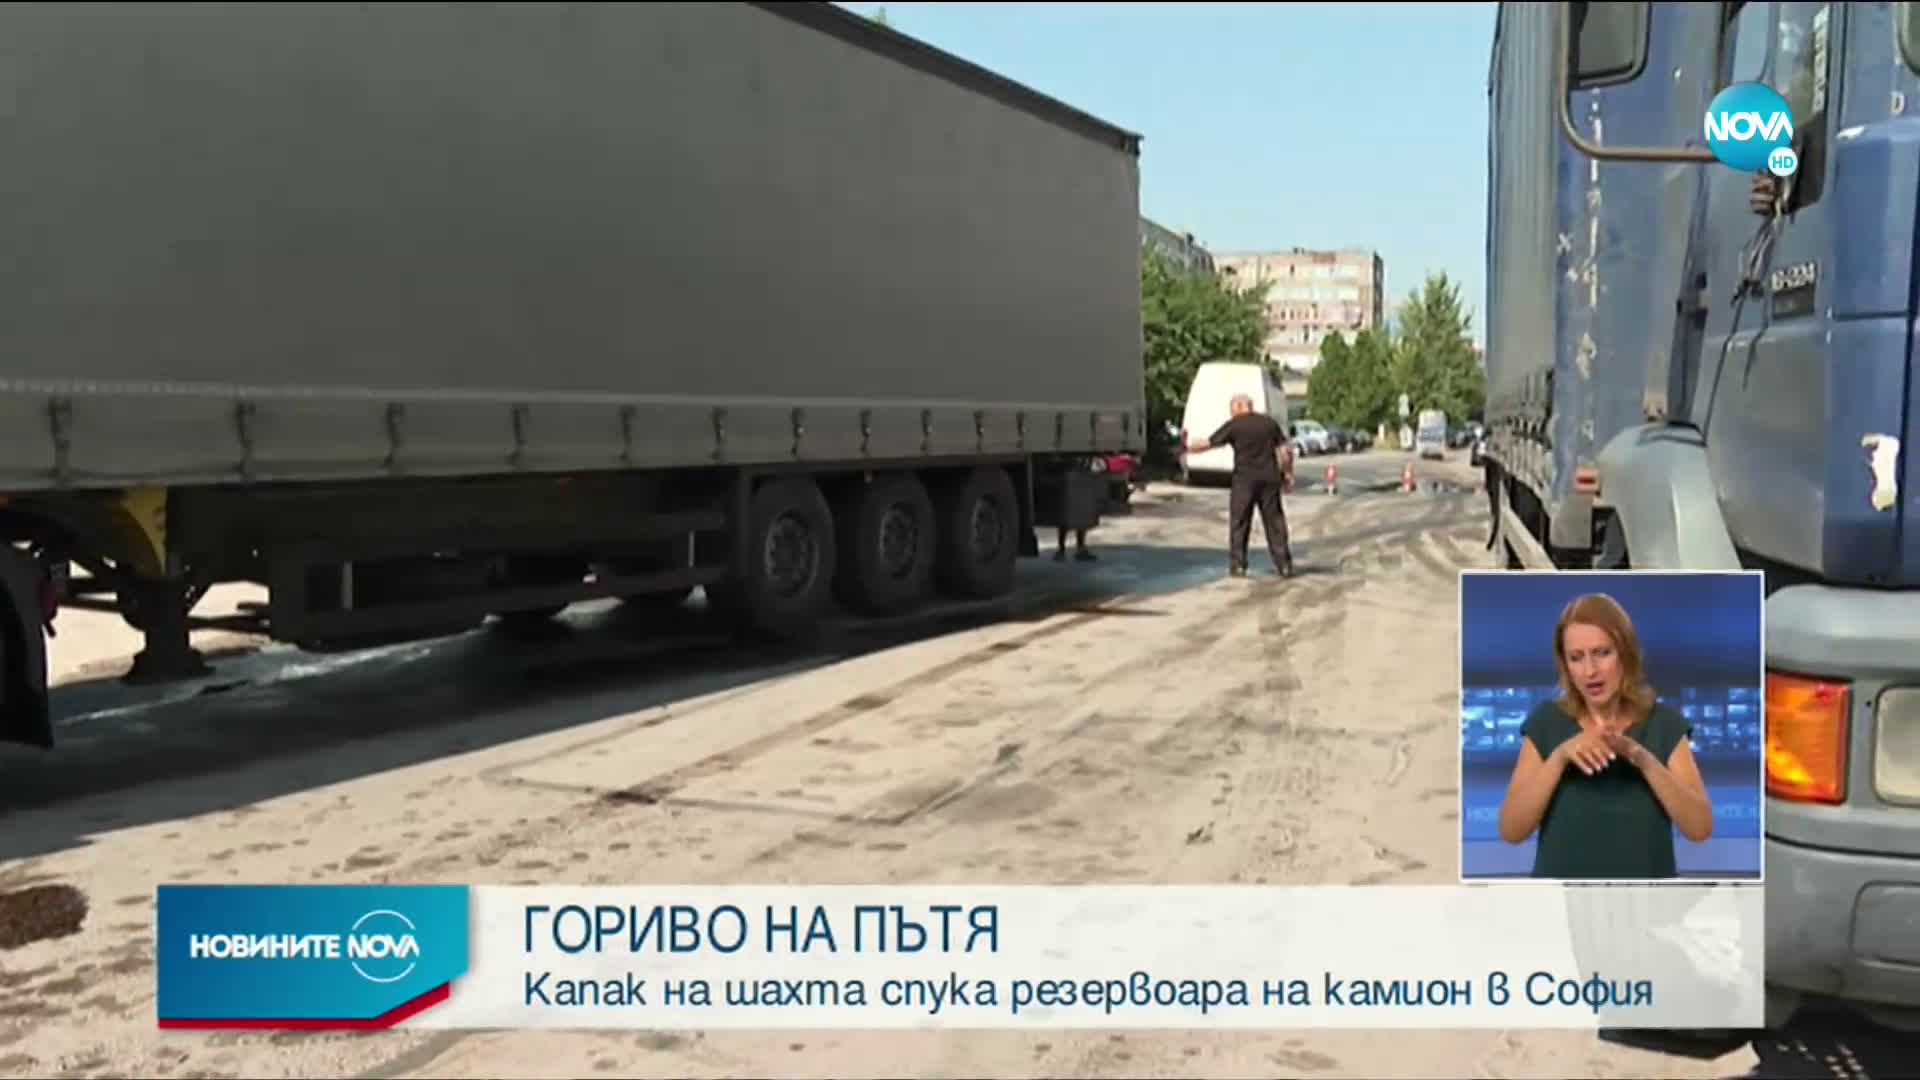 Камион разля над тон гориво в София (ВИДЕО+СНИМКИ)